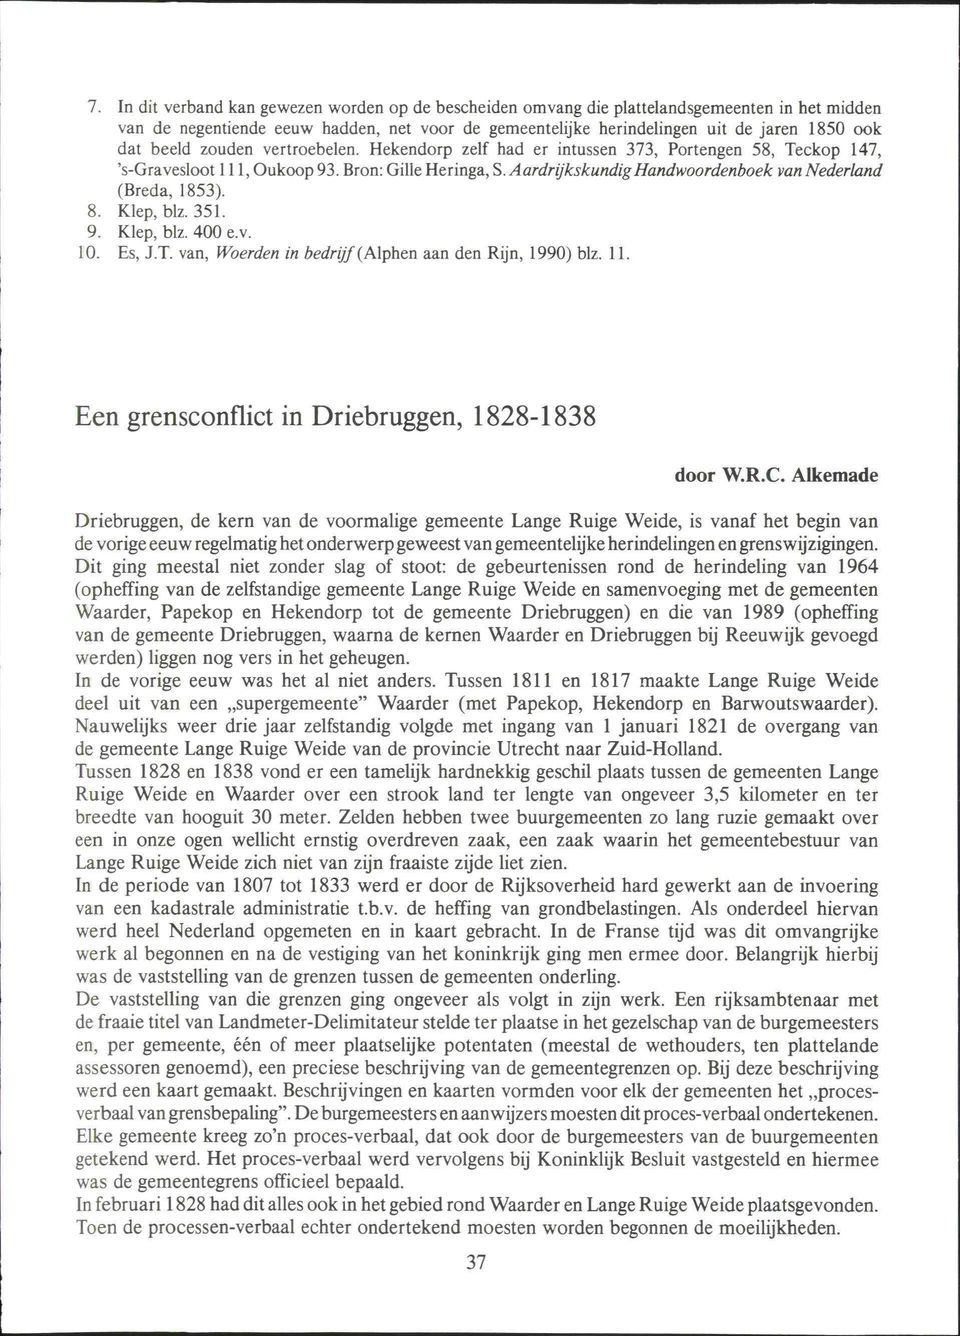 Aardrijkskundig Handwoordenboek van Nederland (Breda, 1853). 8. Klep, blz. 351. 9. Klep, blz. 400 e.v. 10. Es, J.T. van, Woerden in bedrijf (Alphen aan den Rijn, 1990) blz. 11.